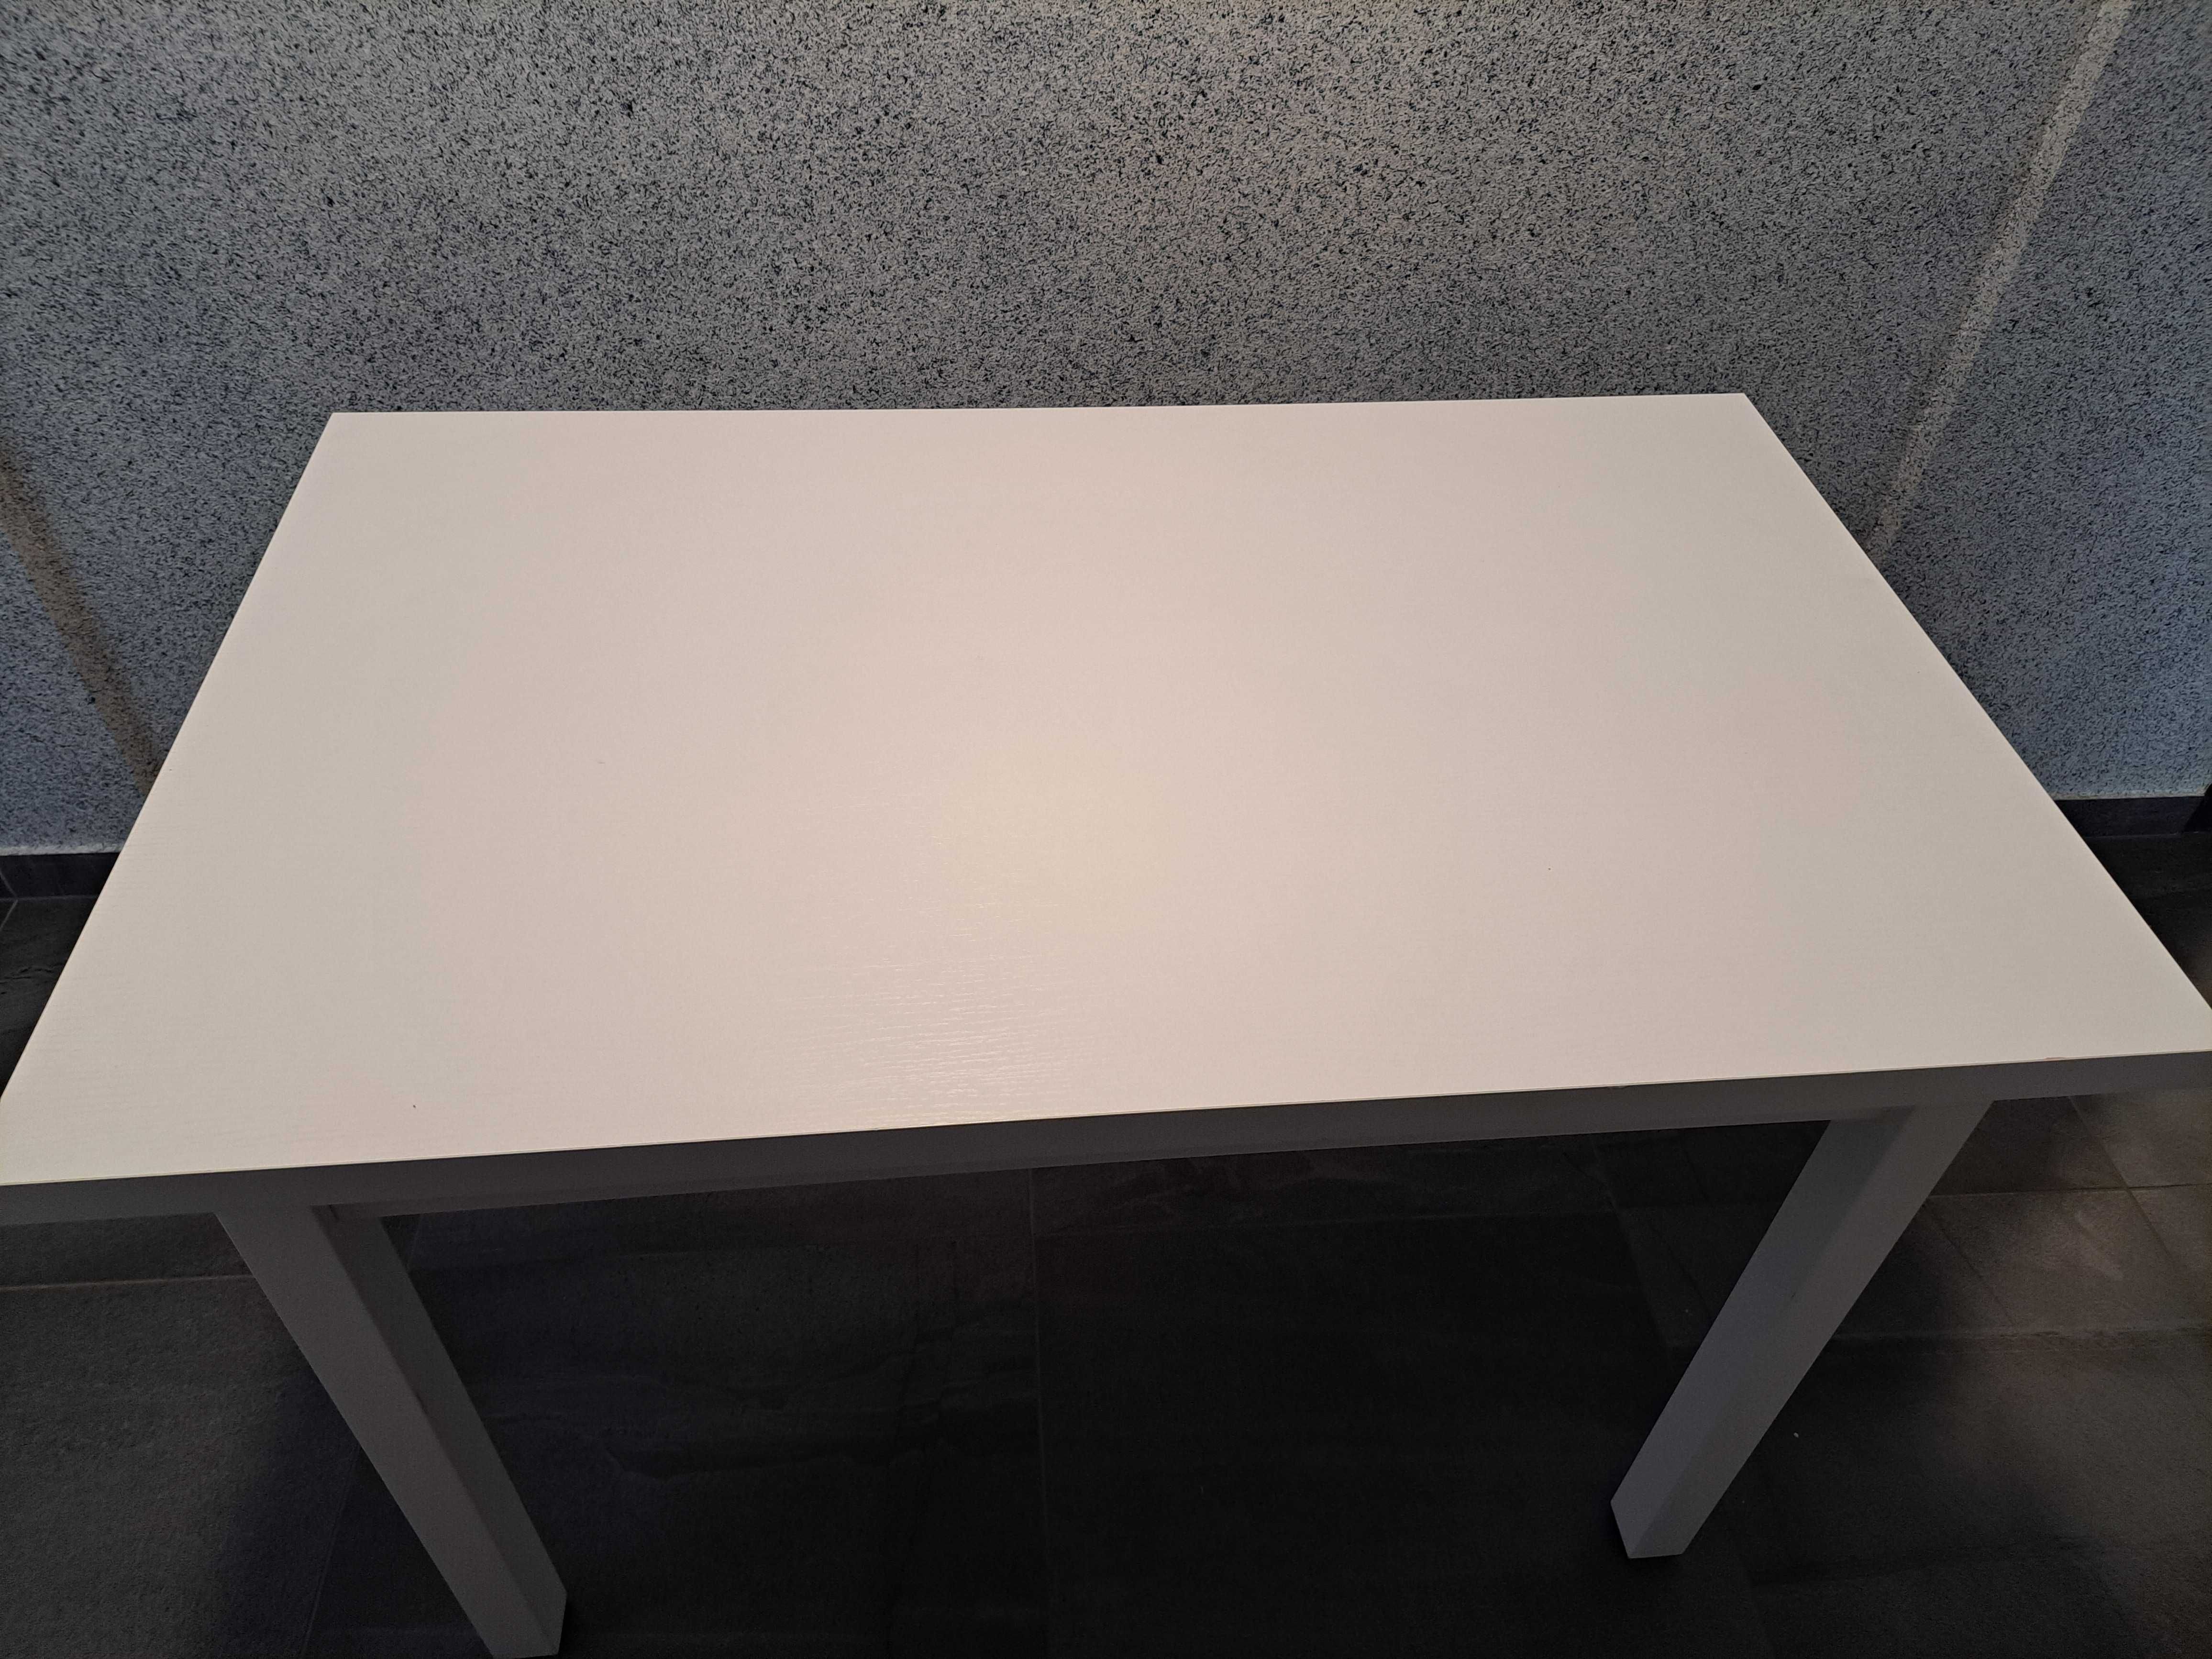 Sprzedam stół w bardzo dobrym stanie , 68cm/ 110 cm. Cena 200zl